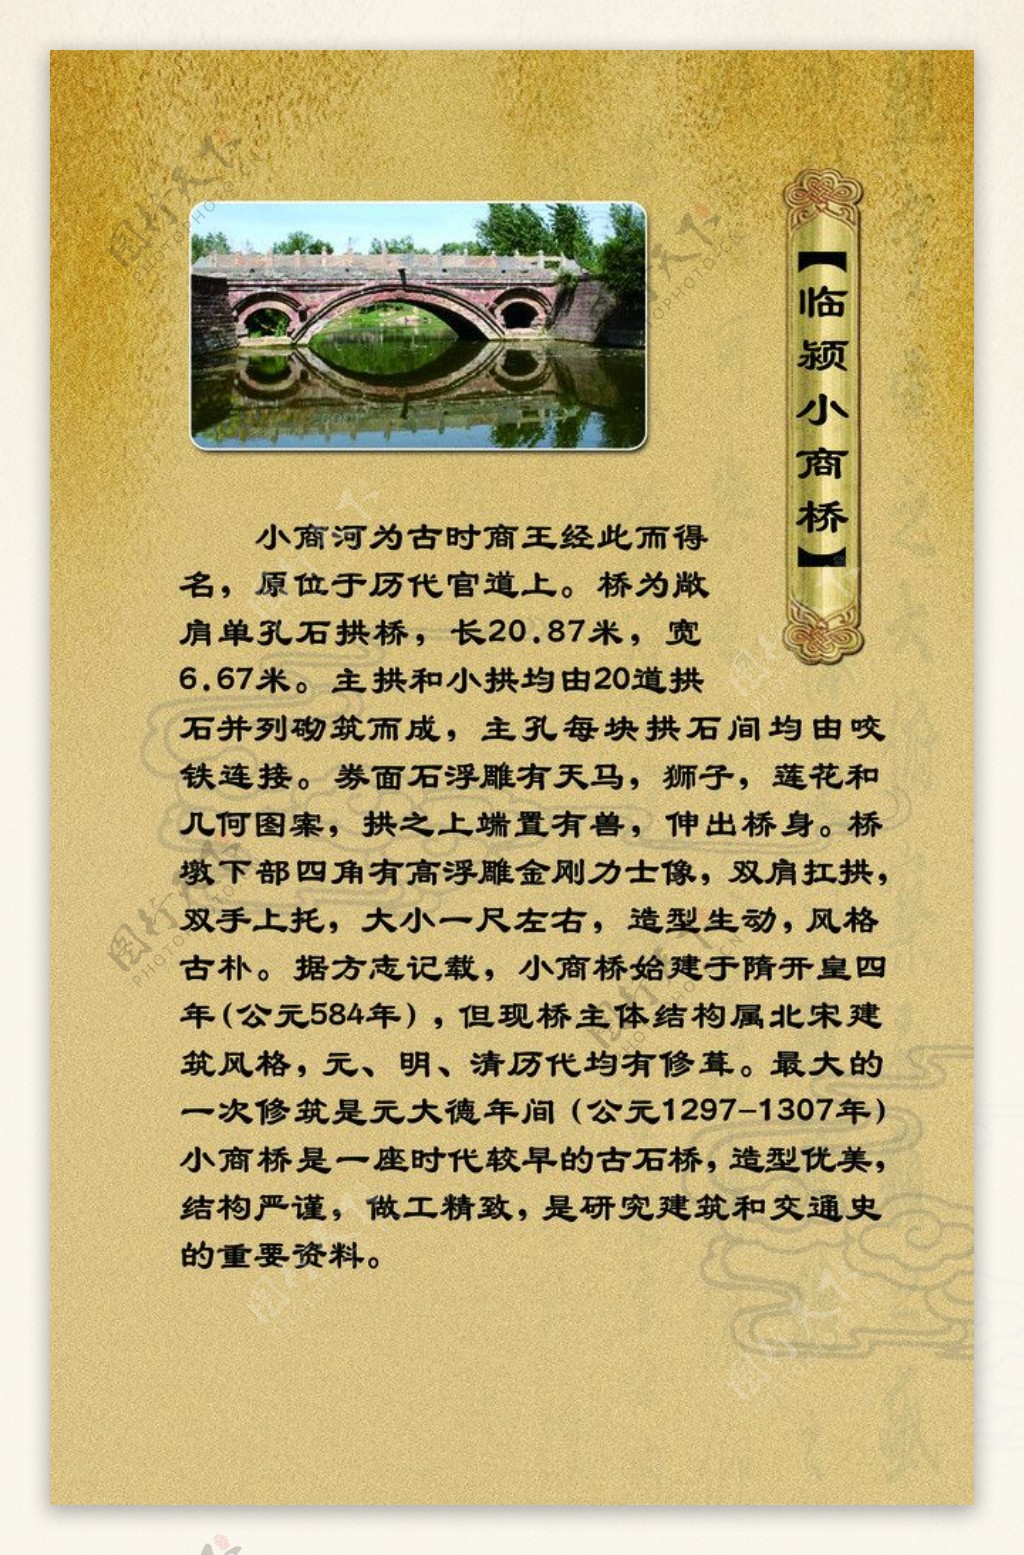 「临颍县黄帝庙乡小商桥」丨全国重点文物保护单位 - 哔哩哔哩